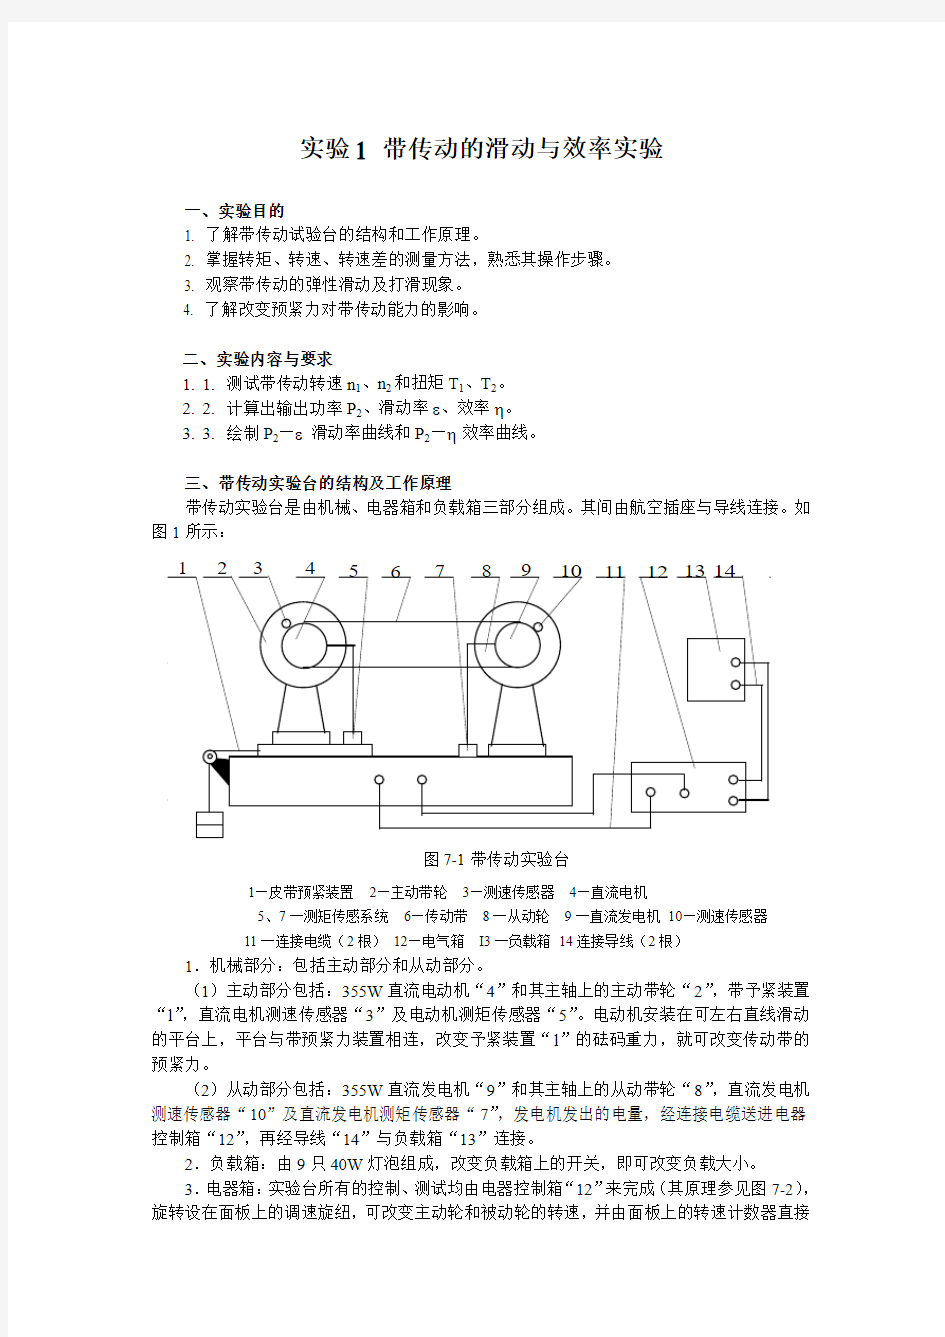 上海工程技术大学机械设计A复习题实验1 带传动的弹性滑动与效率实验